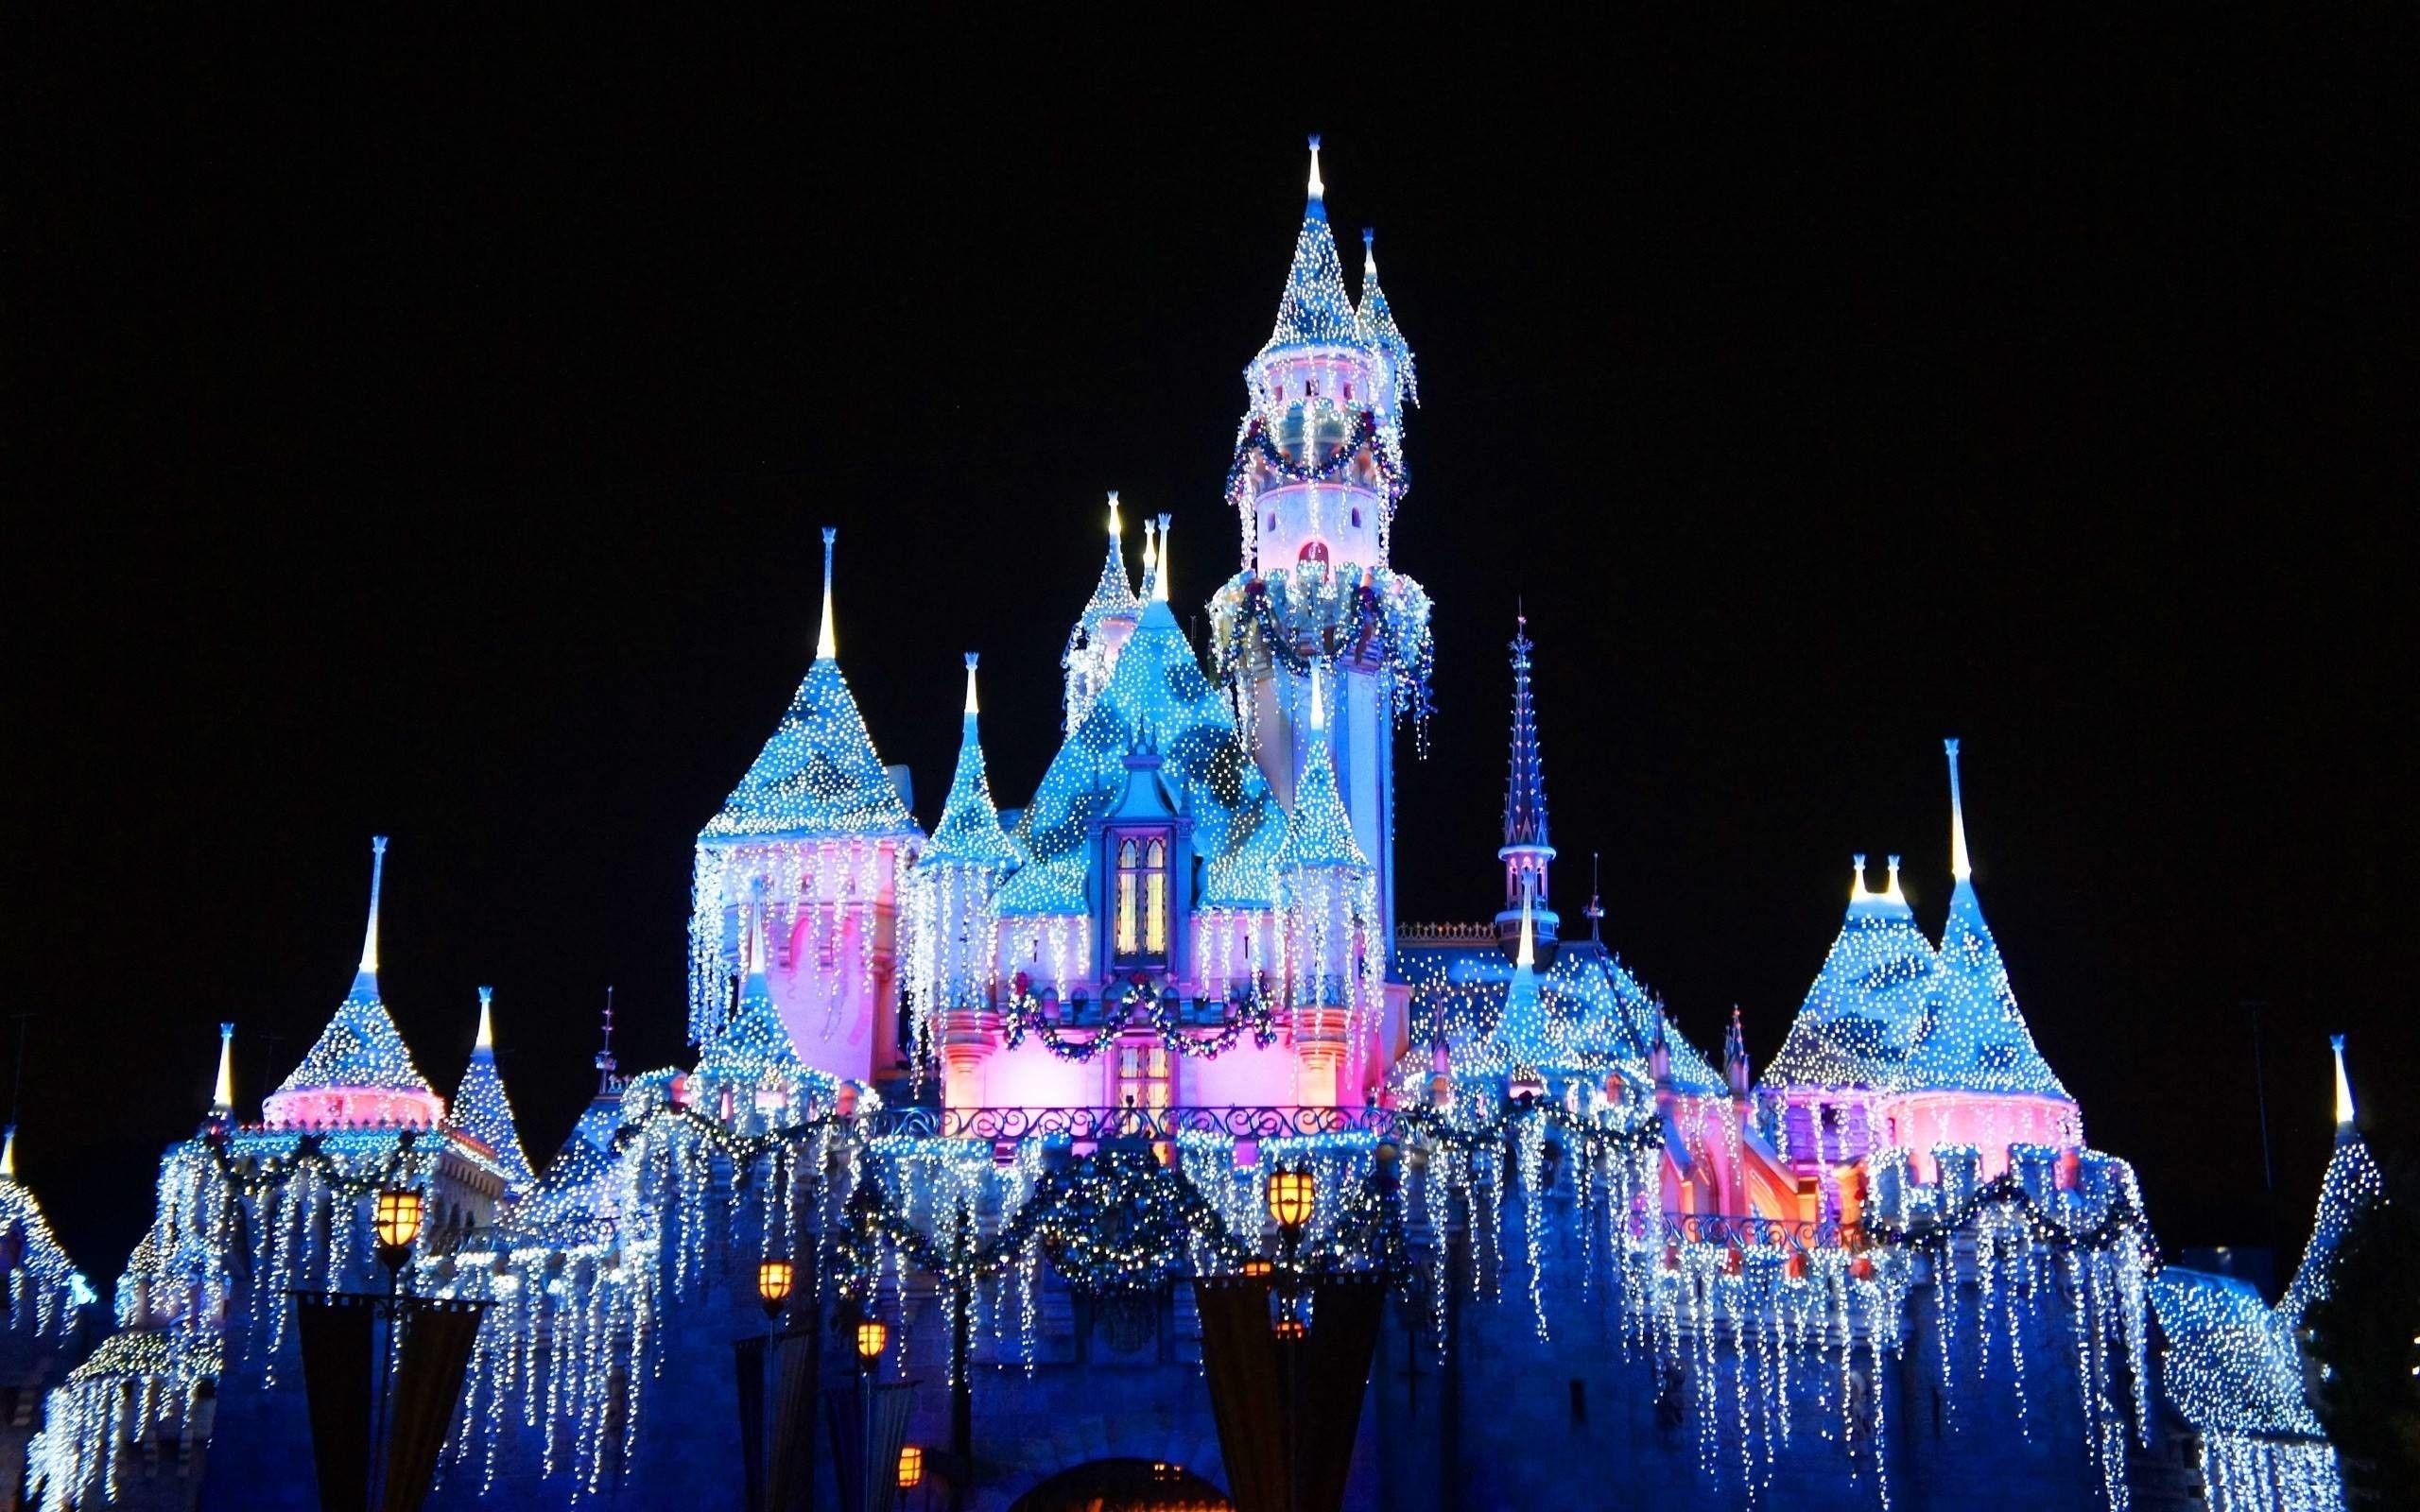 Disneyland Castle - biểu tượng của vương quốc phép thuật, nơi mà ước mơ và trí tưởng tượng trở thành hiện thực. Hình ảnh thành phố huyền thoại này luôn khiến cho chúng ta cảm thấy ngỡ ngàng và thích thú. Hãy cùng đắm mình trong thế giới phép thuật với hình ảnh lâu đài Disneyland của chúng tôi, có thể giúp cho bạn bay đến vùng đất tiên tiến ngay từ chỗ ngồi của mình.